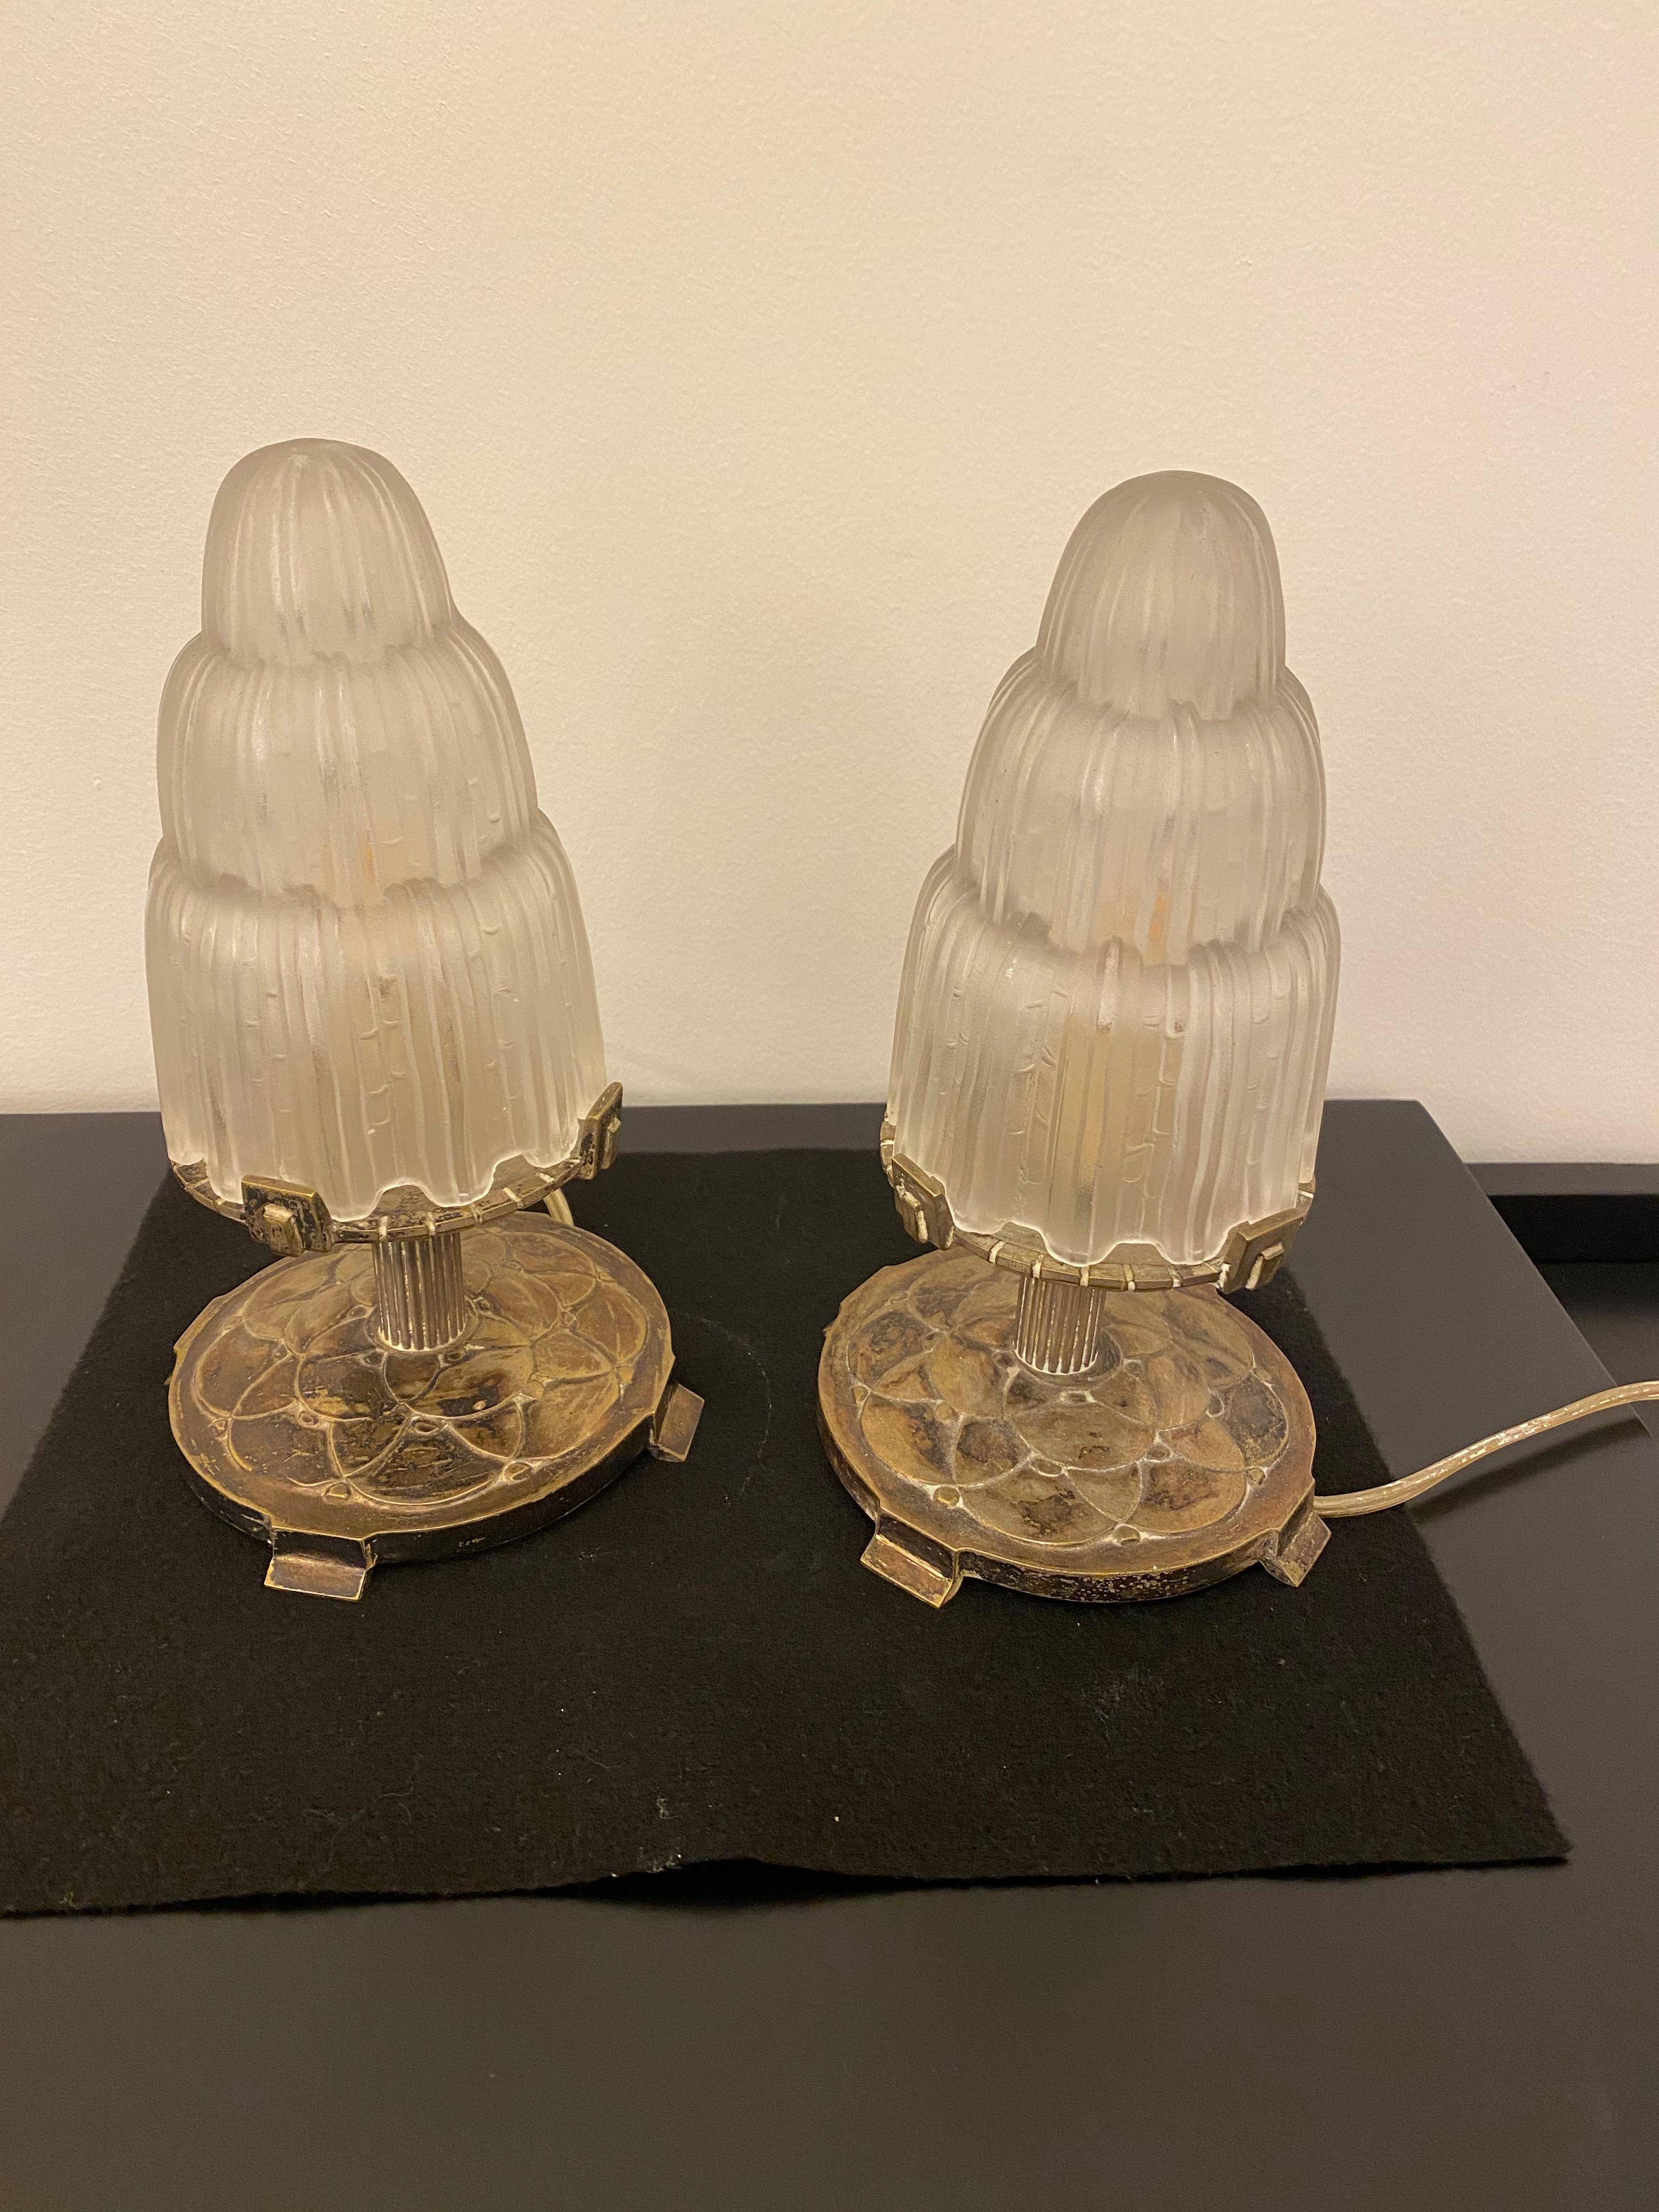 Paire de lampes de table Art Déco françaises créées par Marius Ernest Sabino, (1878-1961). Les abat-jour sont en verre dépoli transparent avec des détails polis appelés 